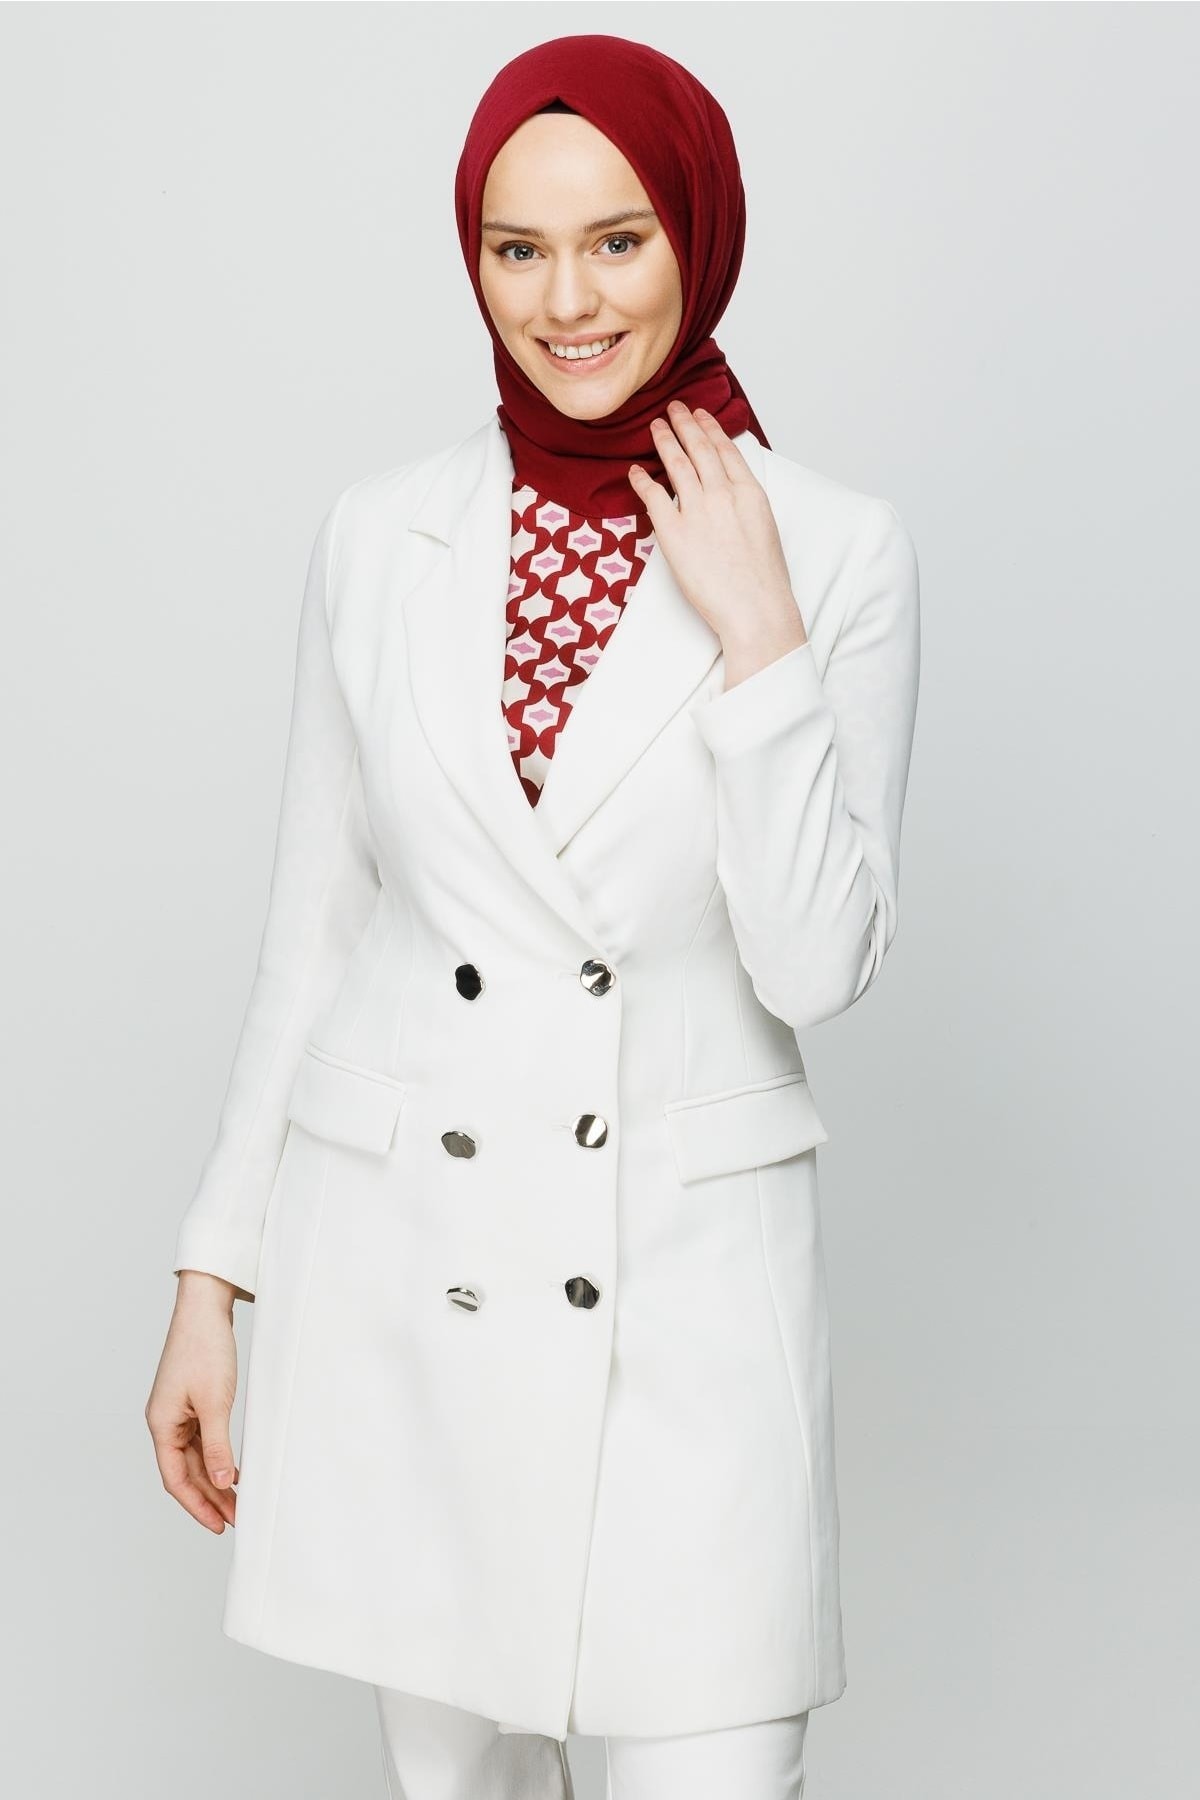 Baumwoll Hijab